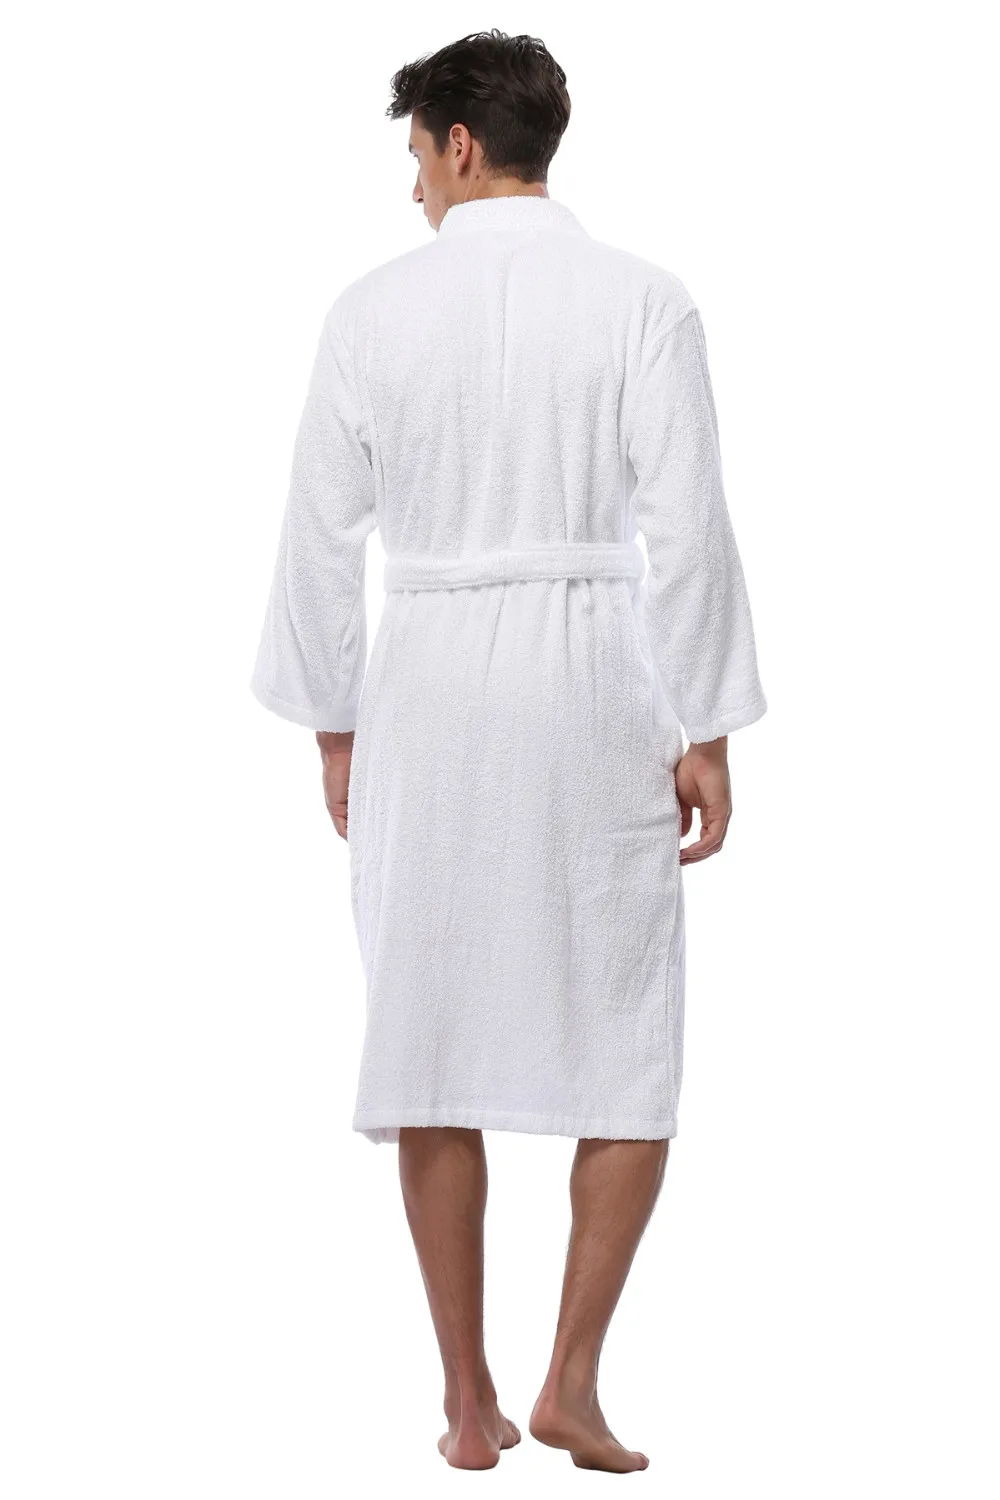 Высококачественный зимний теплый хлопковый мужской Халат, пижама с длинным рукавом, кимоно, халаты для отеля, спа, мягкий плюшевый халат, ночная рубашка, Пижама